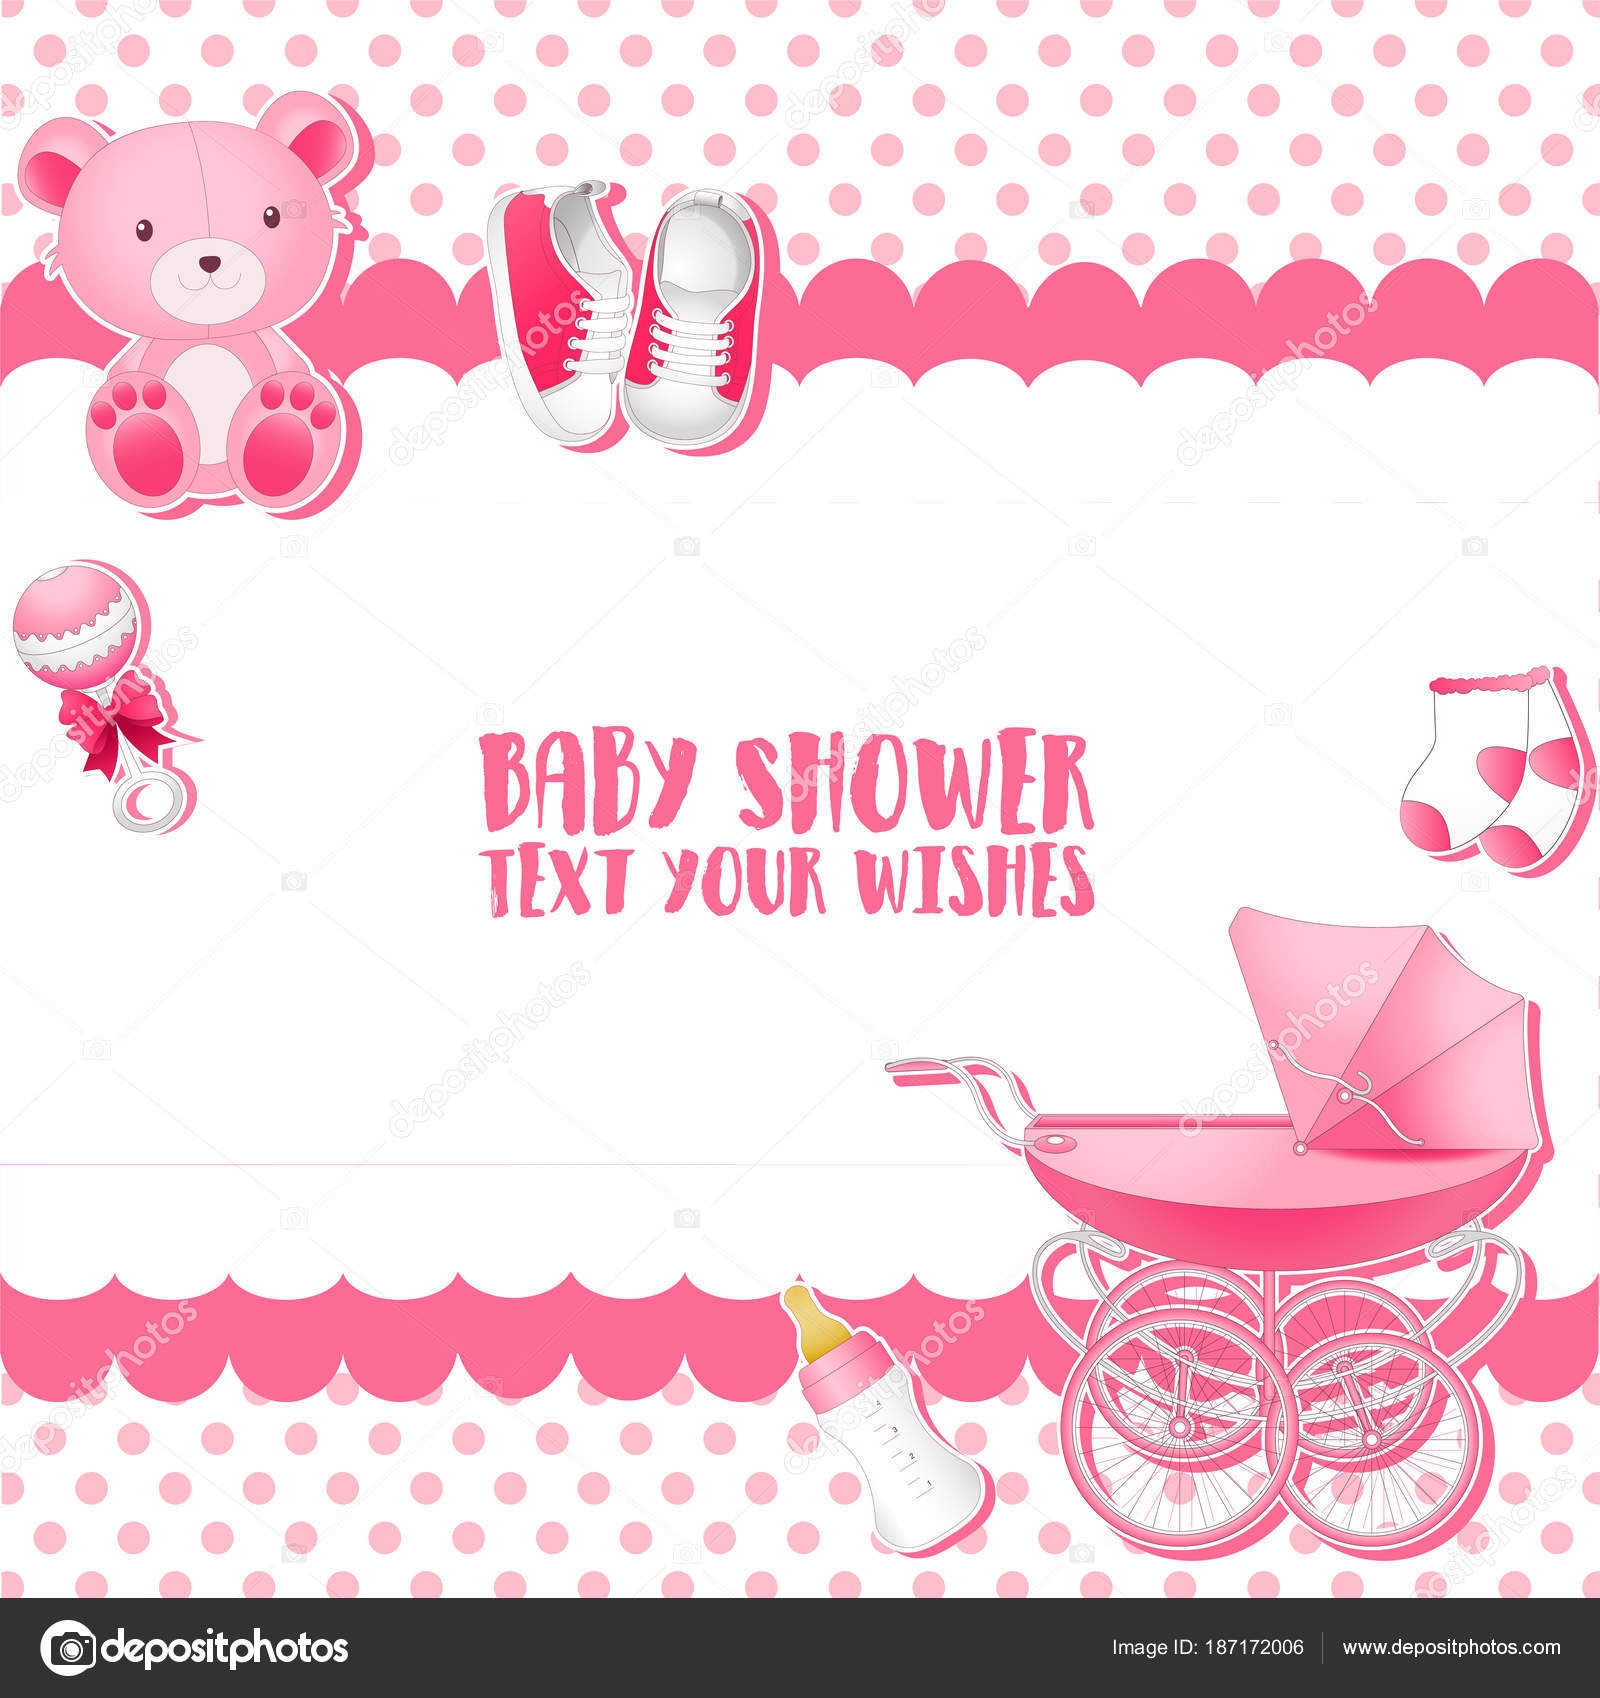 Vector illustration of Baby Shower invitation card template For Baby Shower Invitation Flyer Template